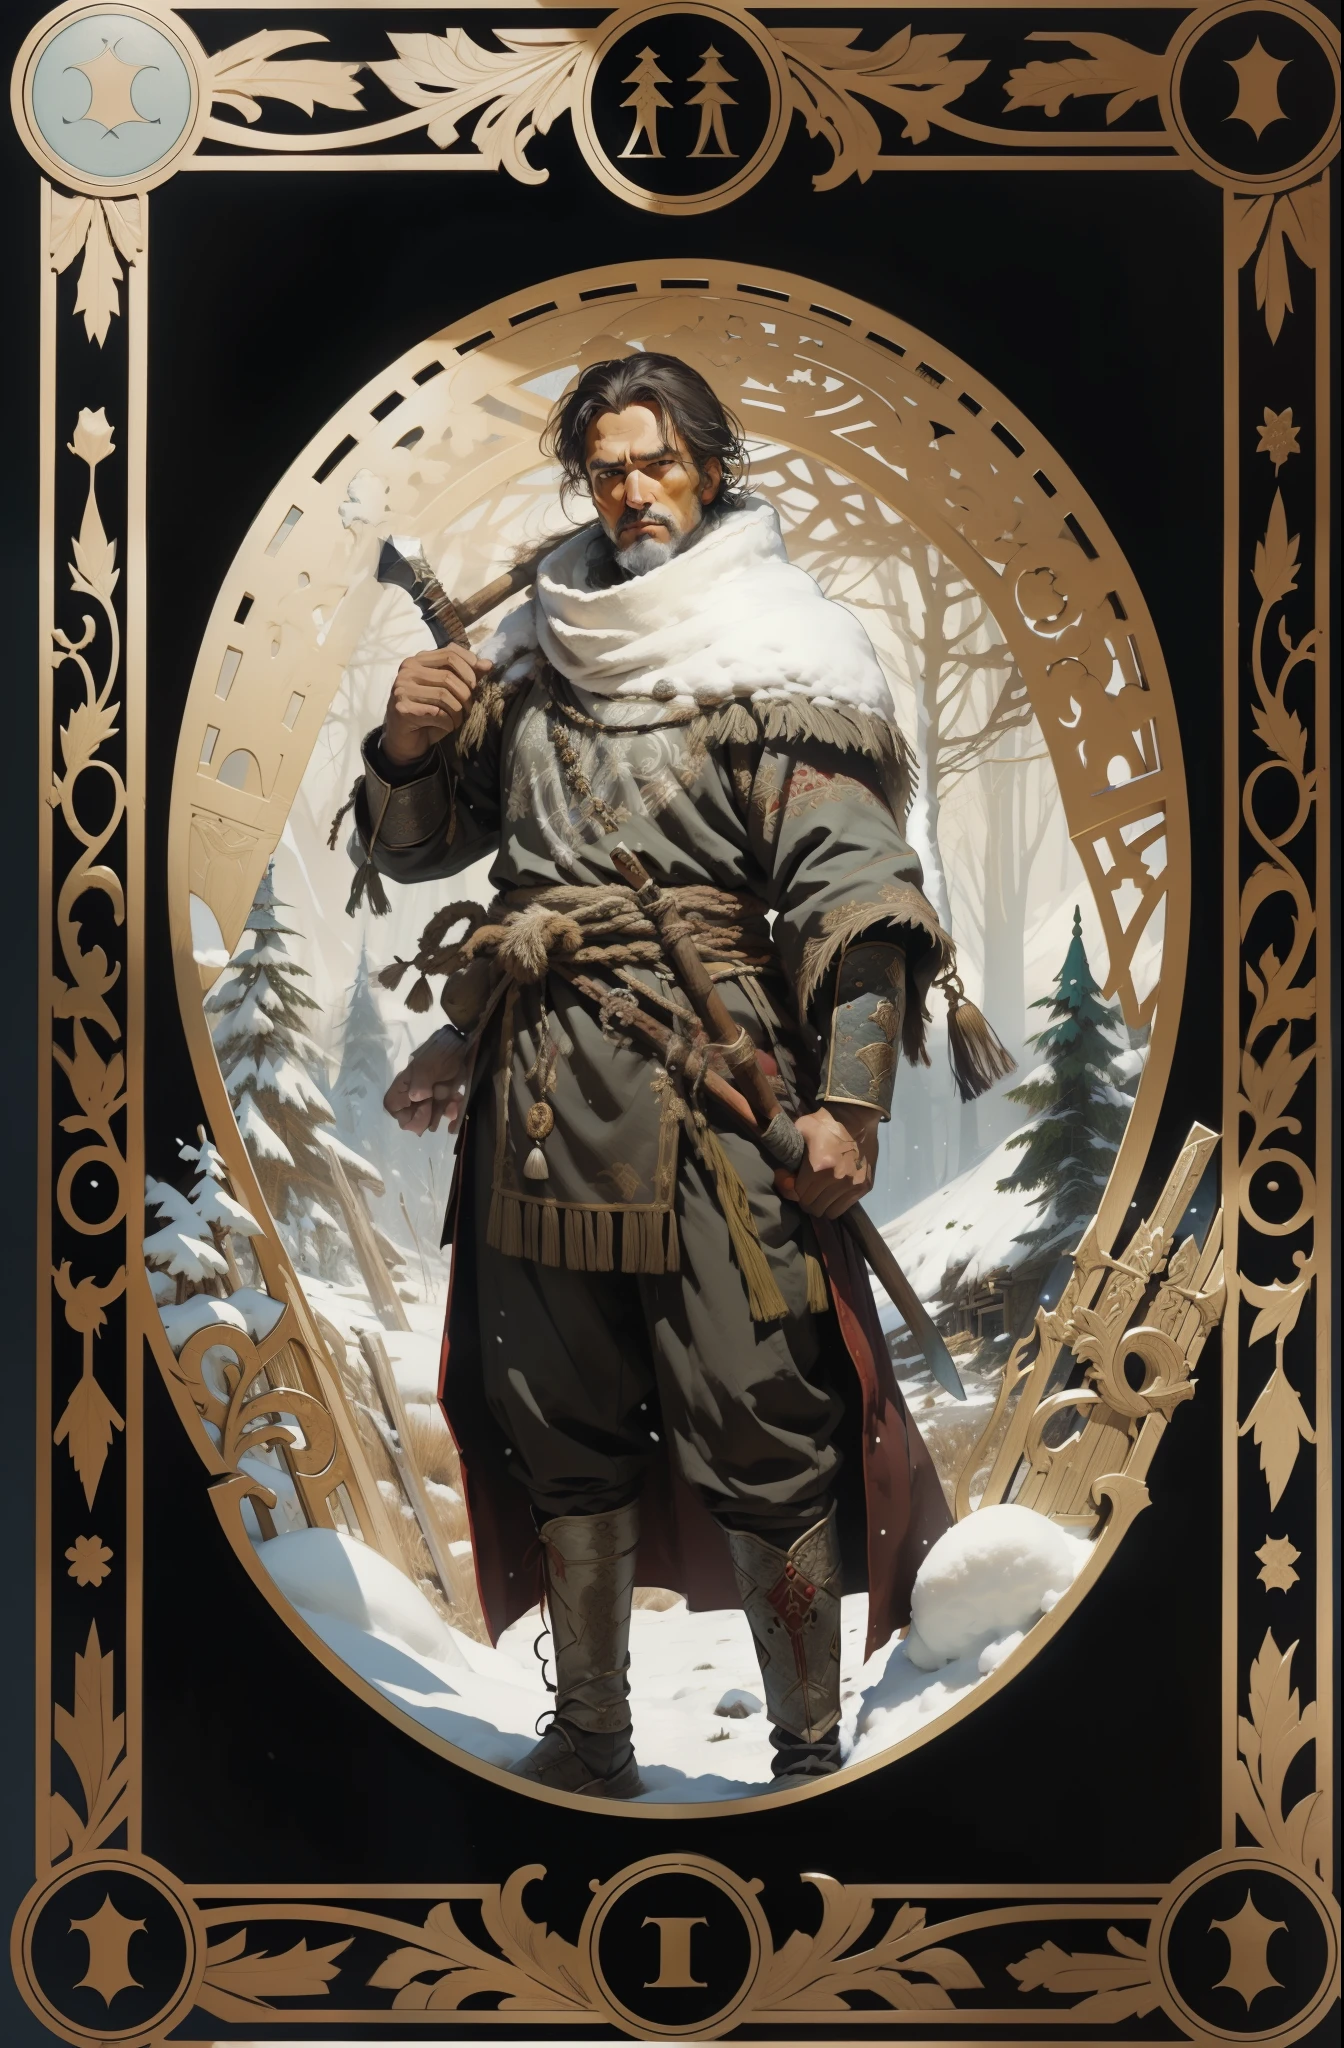 hombre, con ropas tradicionales de los pueblos del norte, con un hacha en sus manos, fondo del bosque nevado, estilo tarot, marco con dibujos medievales